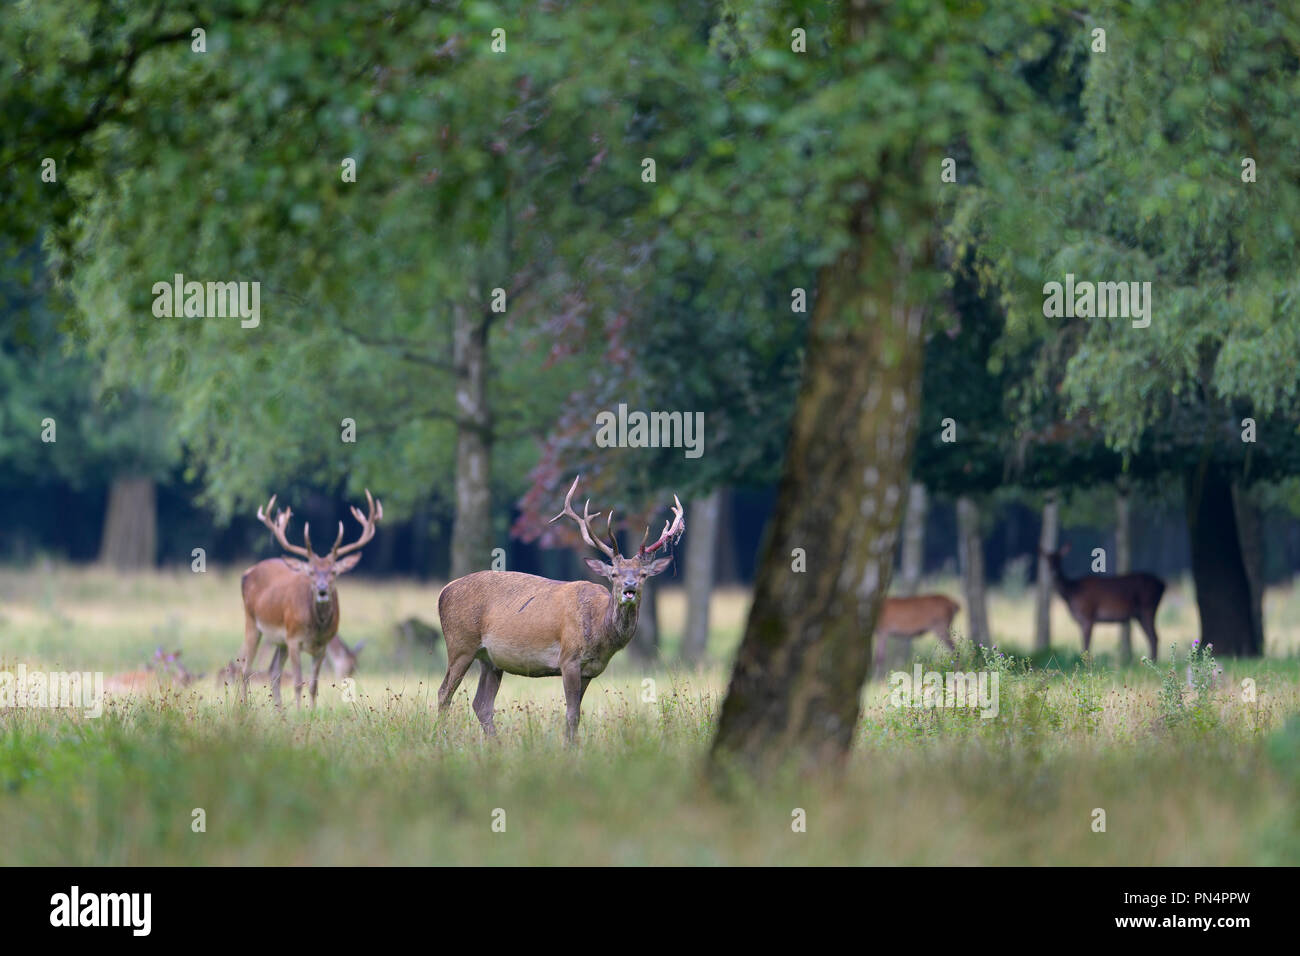 Red Deer, Cervus elaphus, Germany, Europe Stock Photo